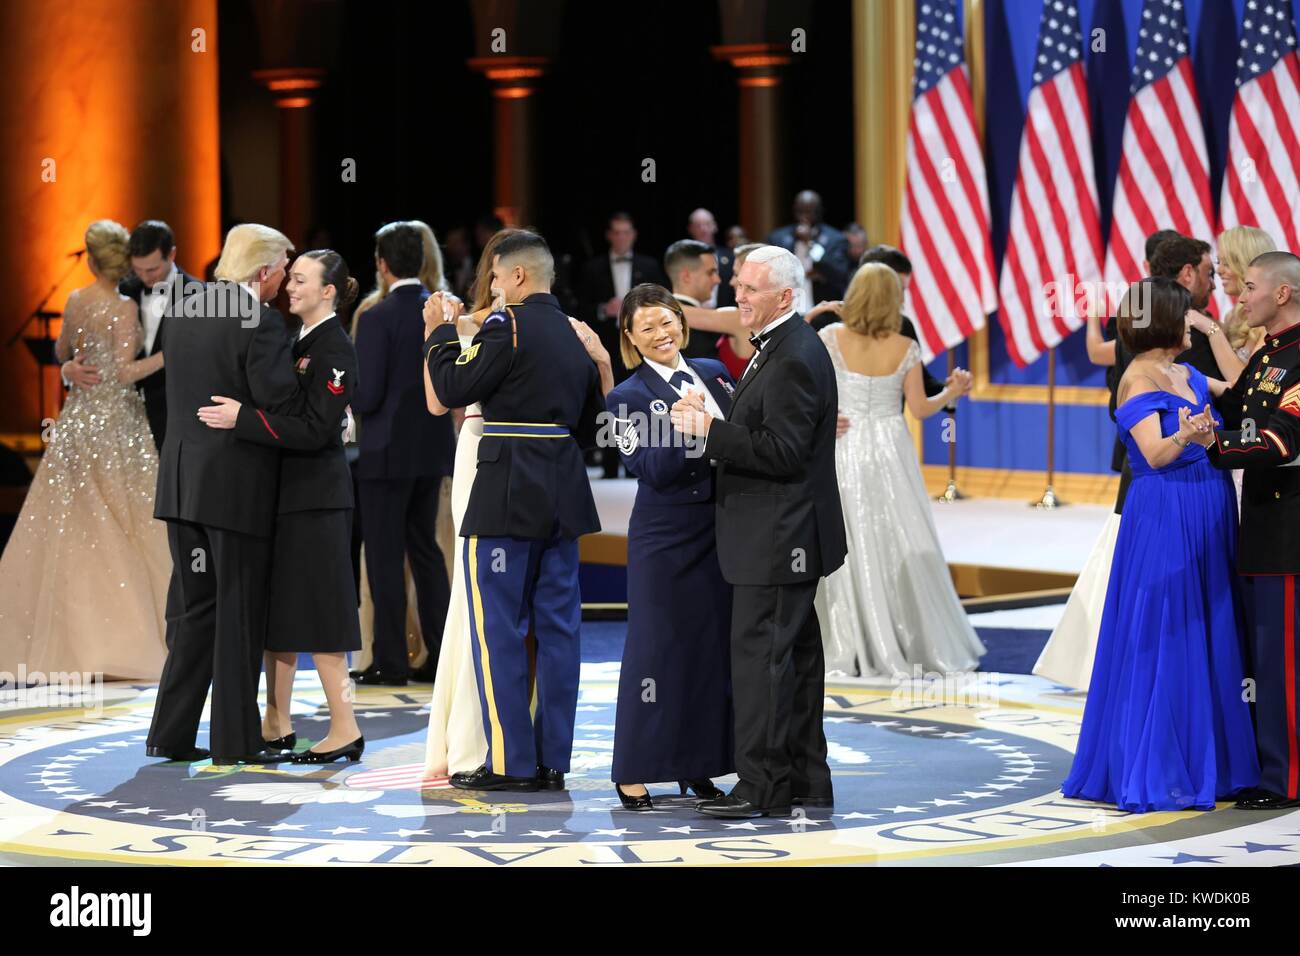 Le président Donald Trump, VICE-PRÉSIDENT, Mike Pence, et danser avec les épouses des militaires et les premiers intervenants. Ils sont à l'Hommage à nos forces armées Ball au National Building Museum de Washington, D.C., le 20 janvier 2017 (BSLOC   2017 18 126) Banque D'Images